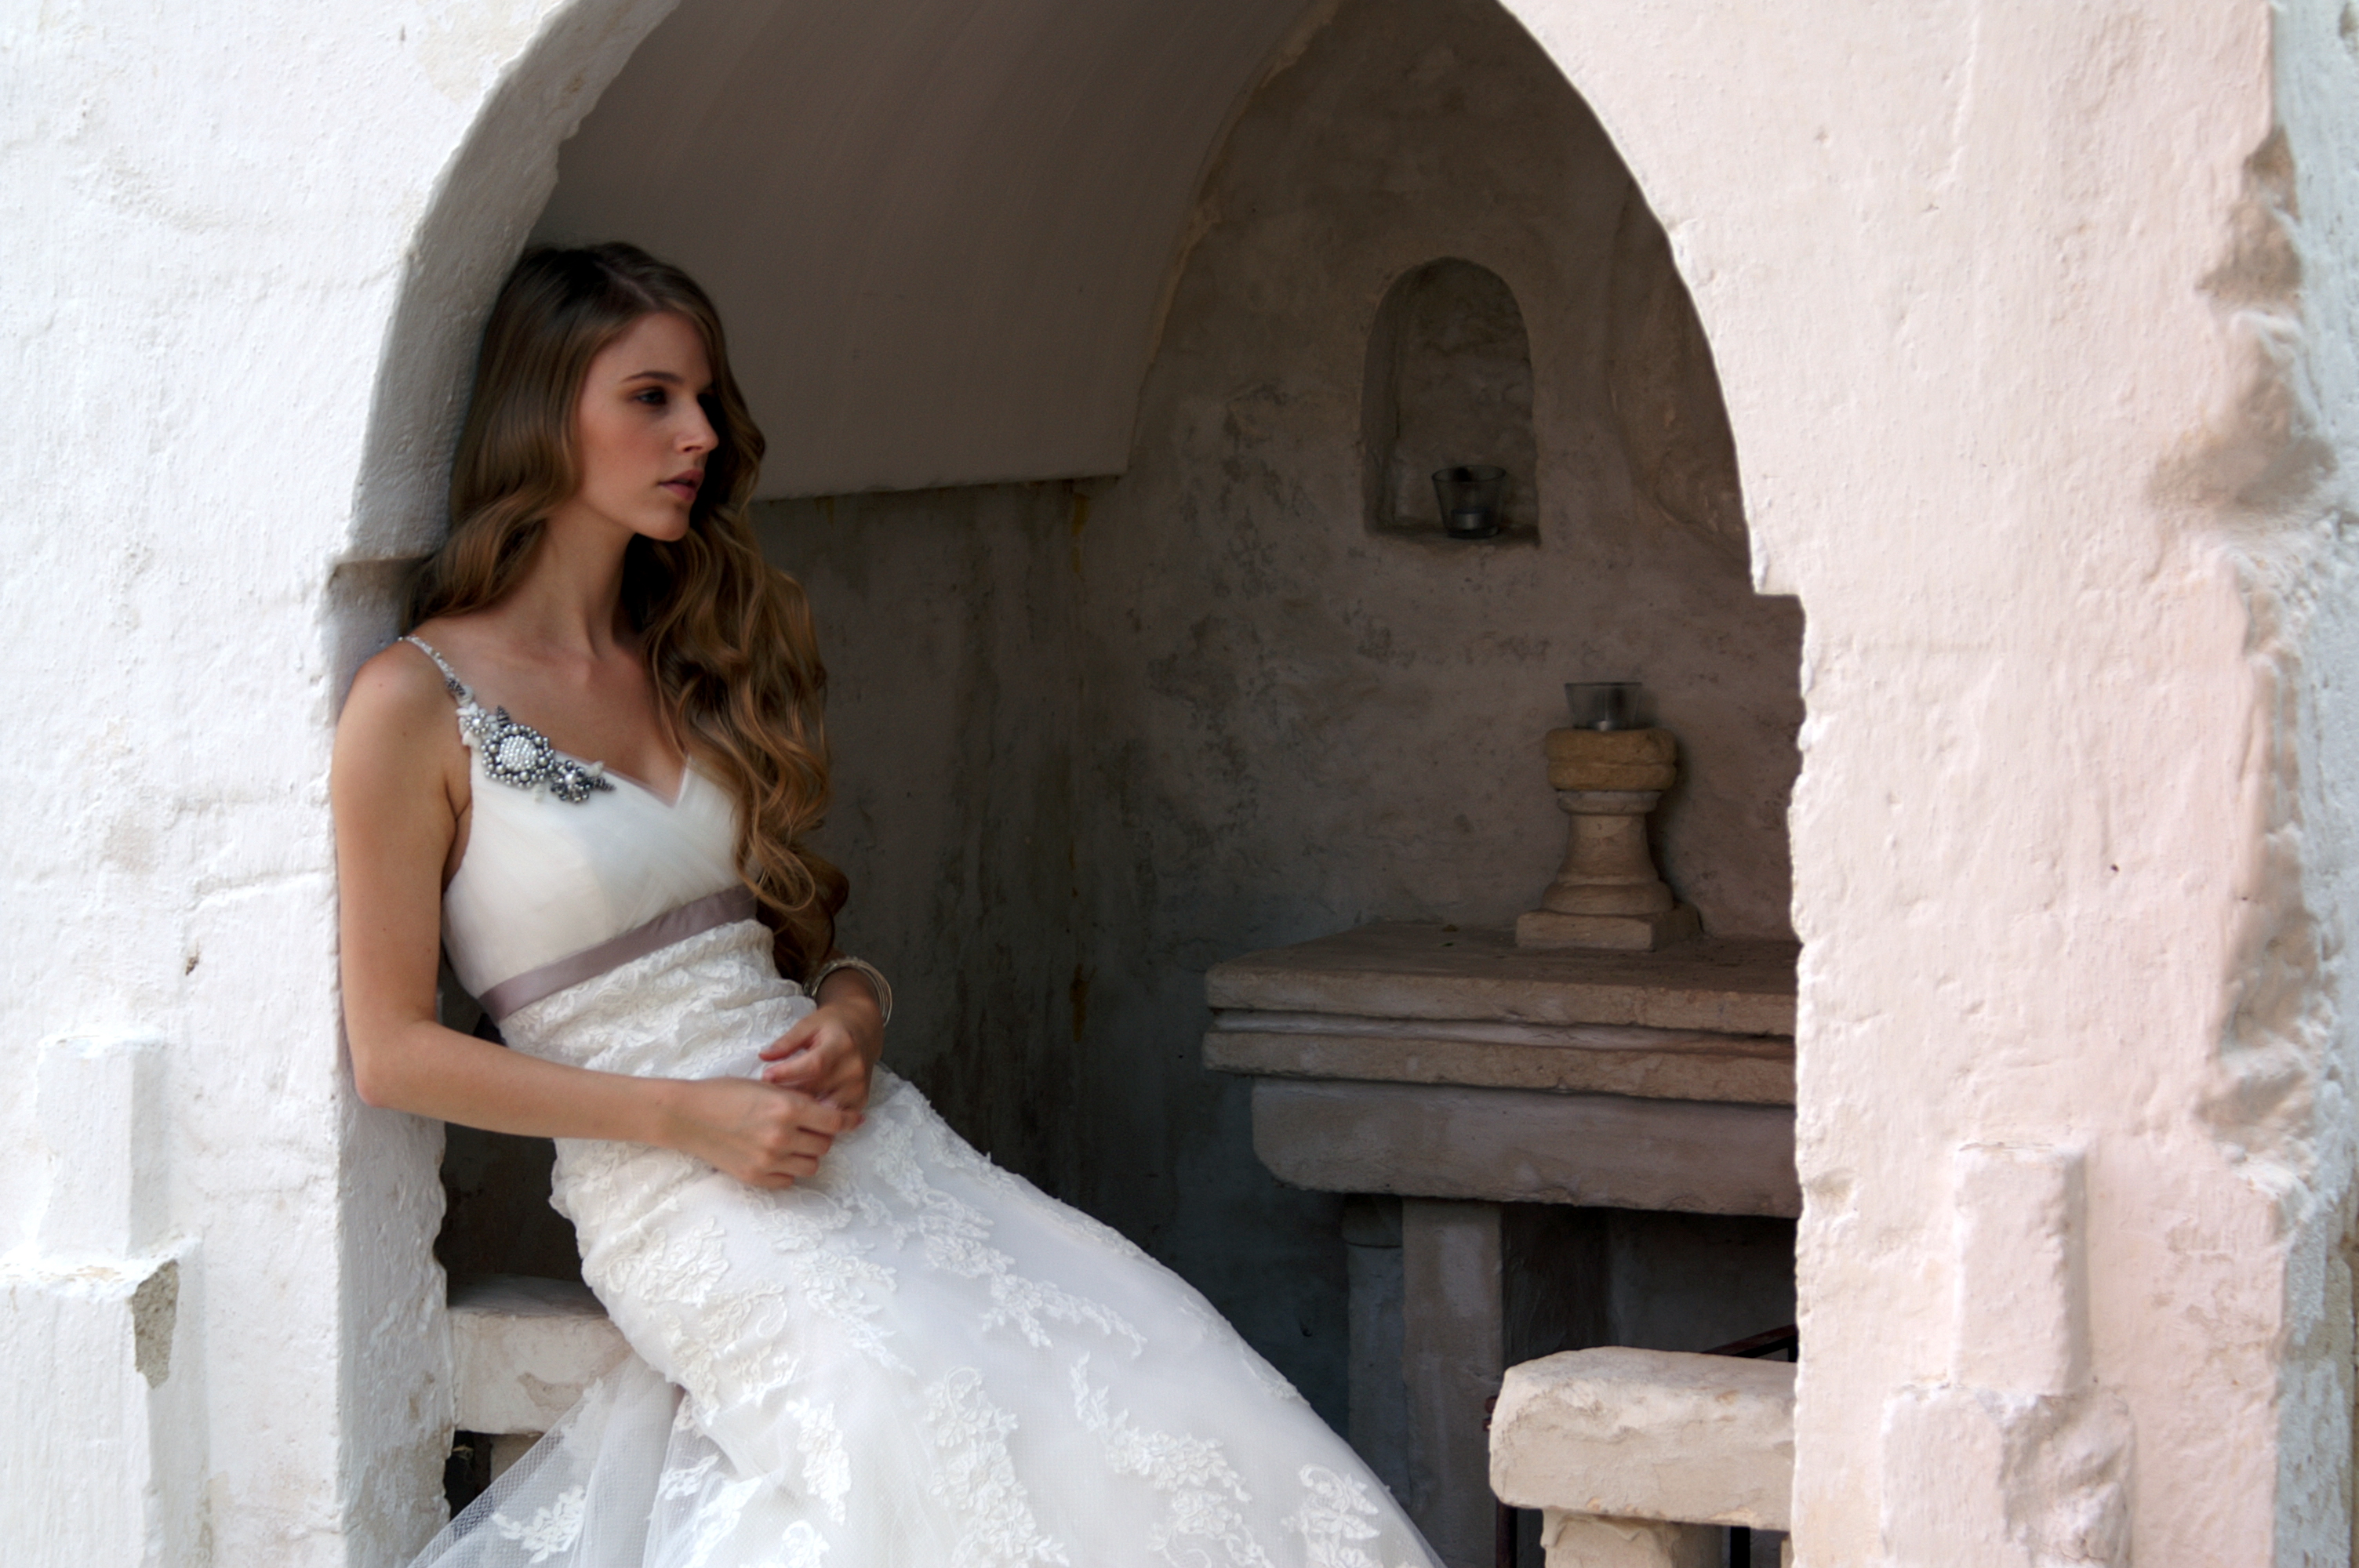 Model at Masseria Cimino wearing white wedding dress during photo shooting